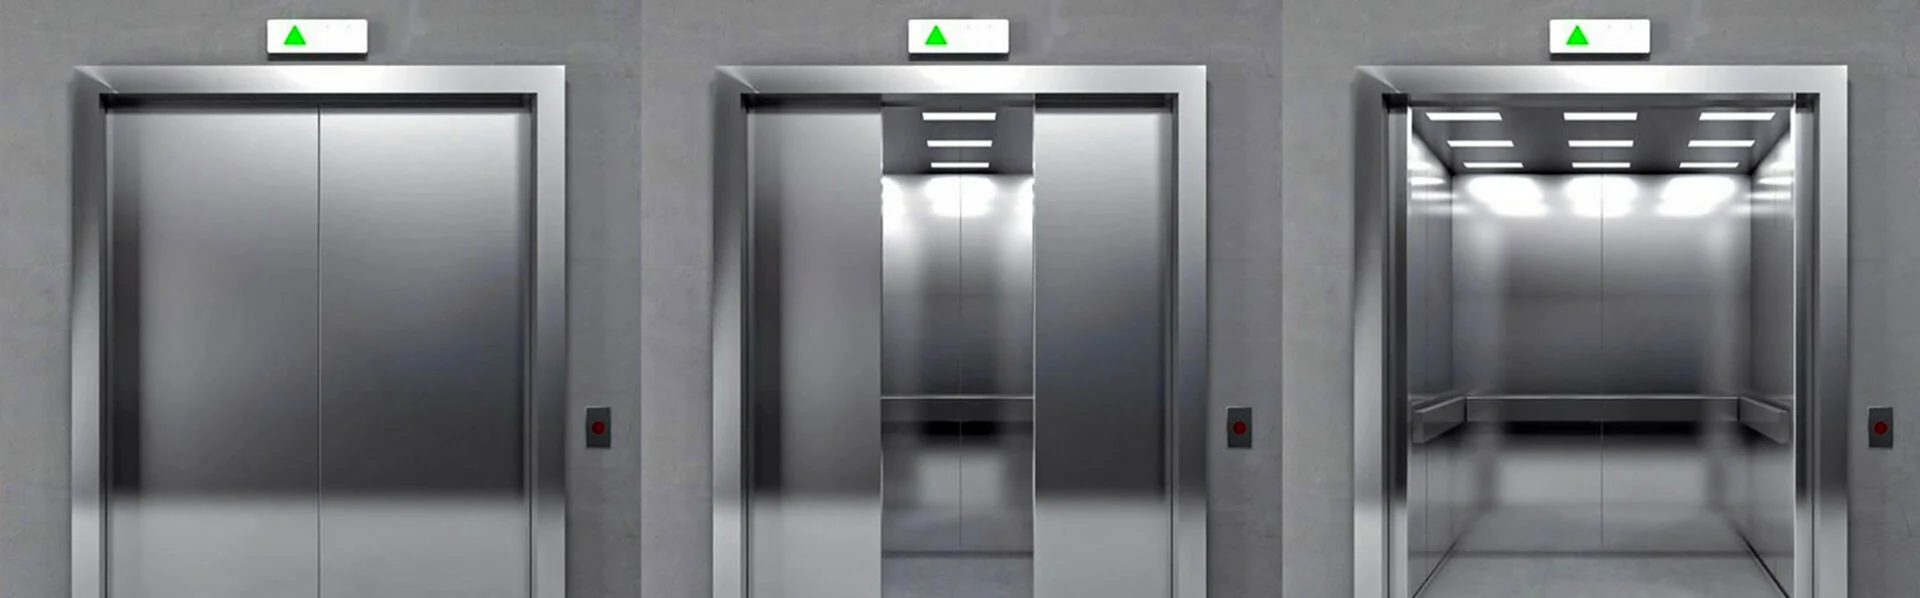 Лифт ULS